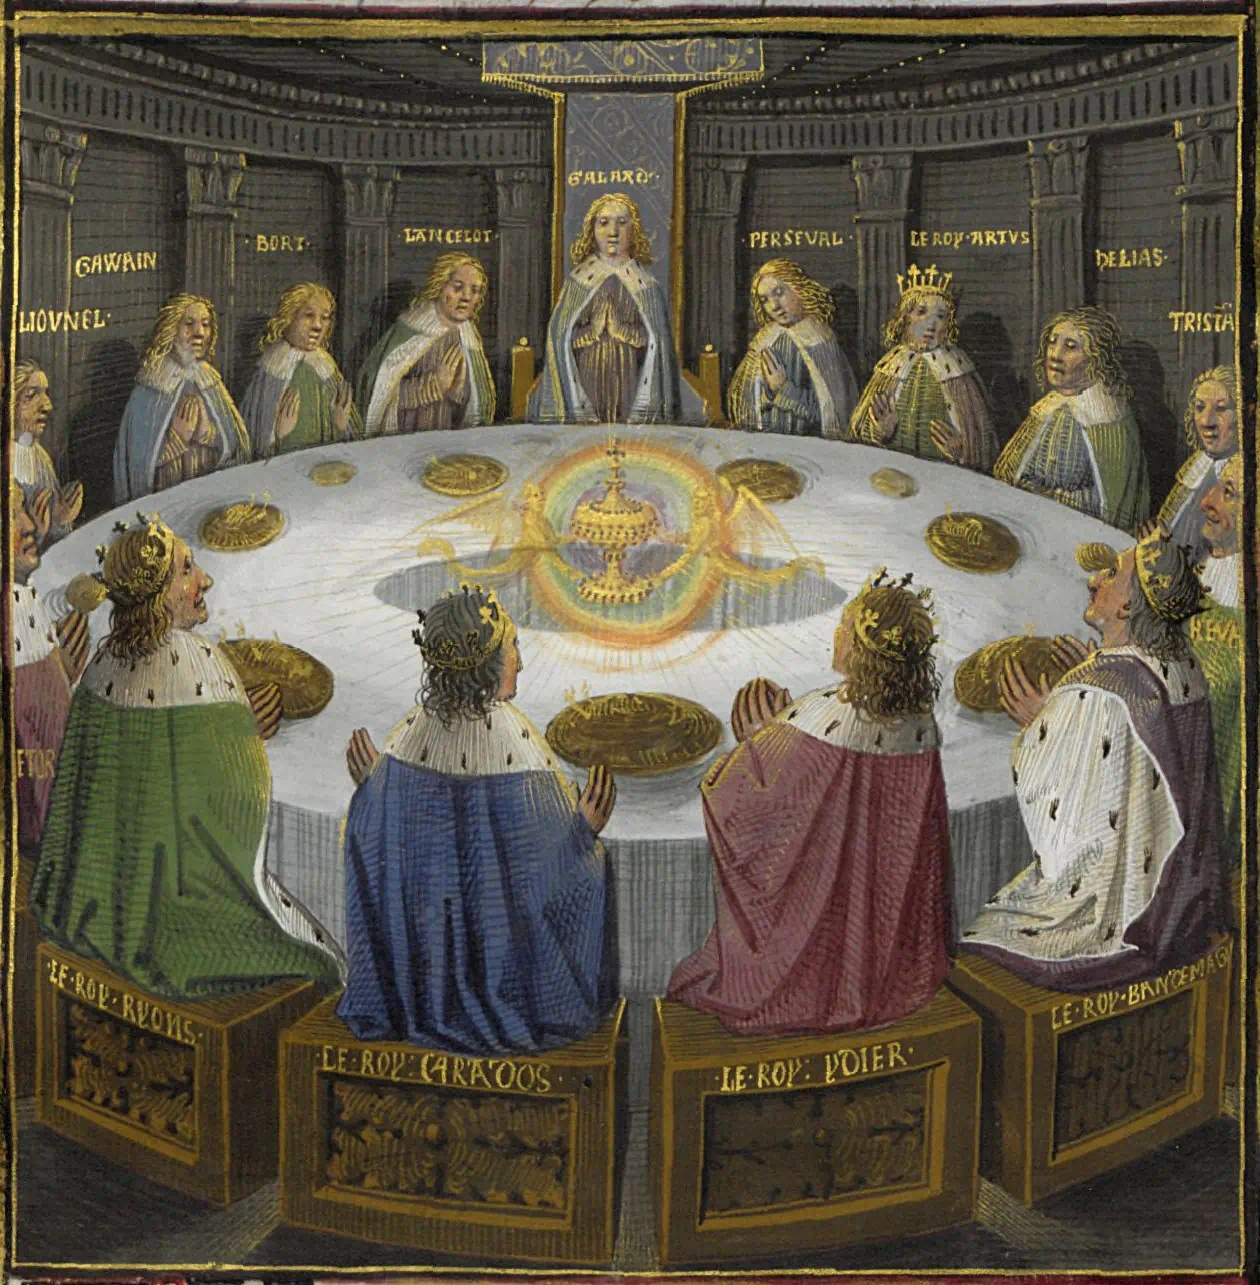 Gezeigt wird eine bildliche Darstellung der Ritter der Tafelrunde an einem runden Tisch aus einer Handschrift des 15. Jahrhunderts